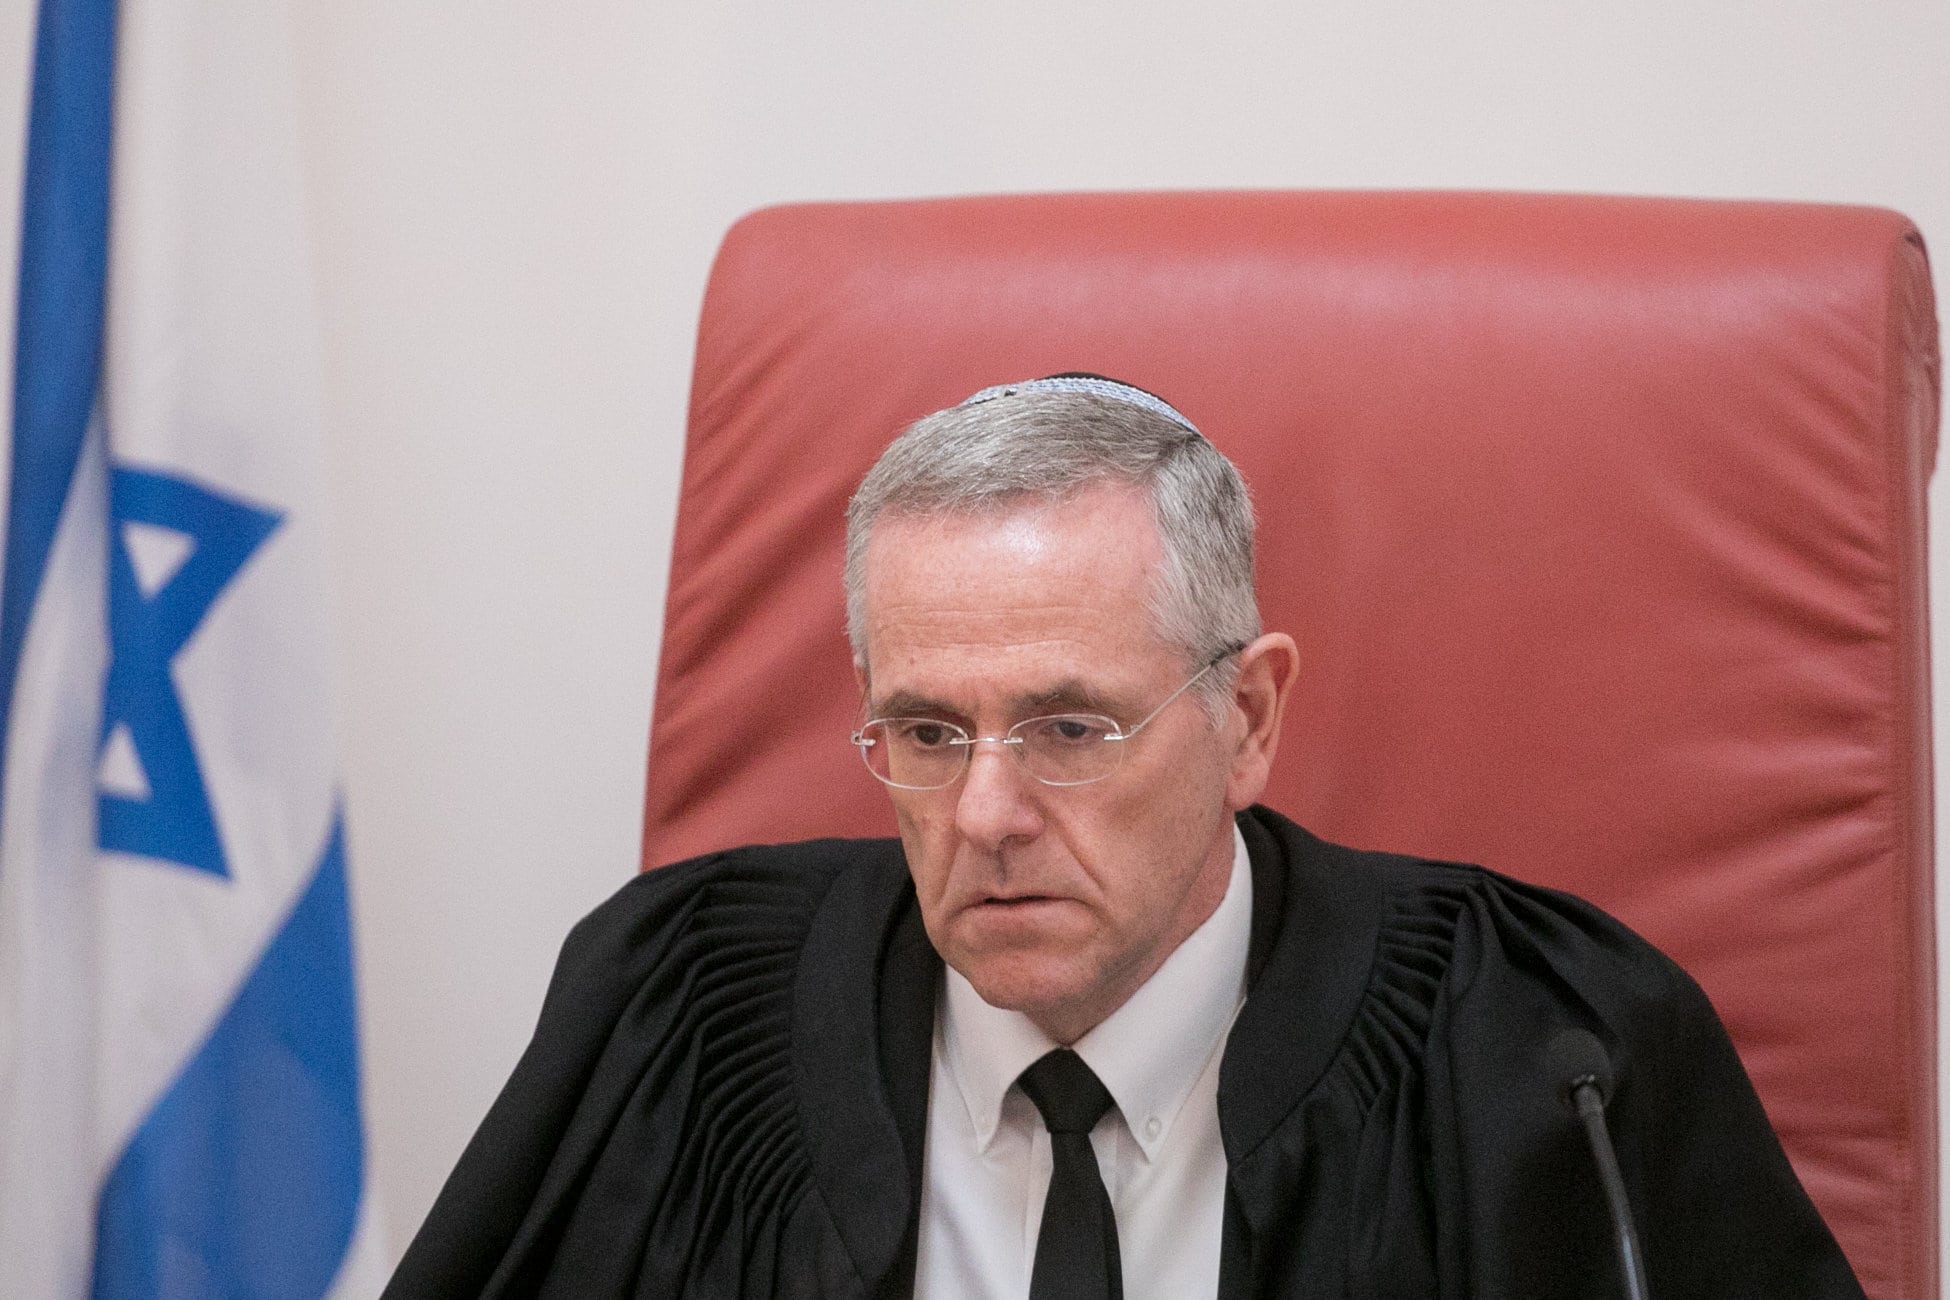 שופט בית המשפט העליון דוד מינץ (צילום: מרים אלסטר/פלאש90)